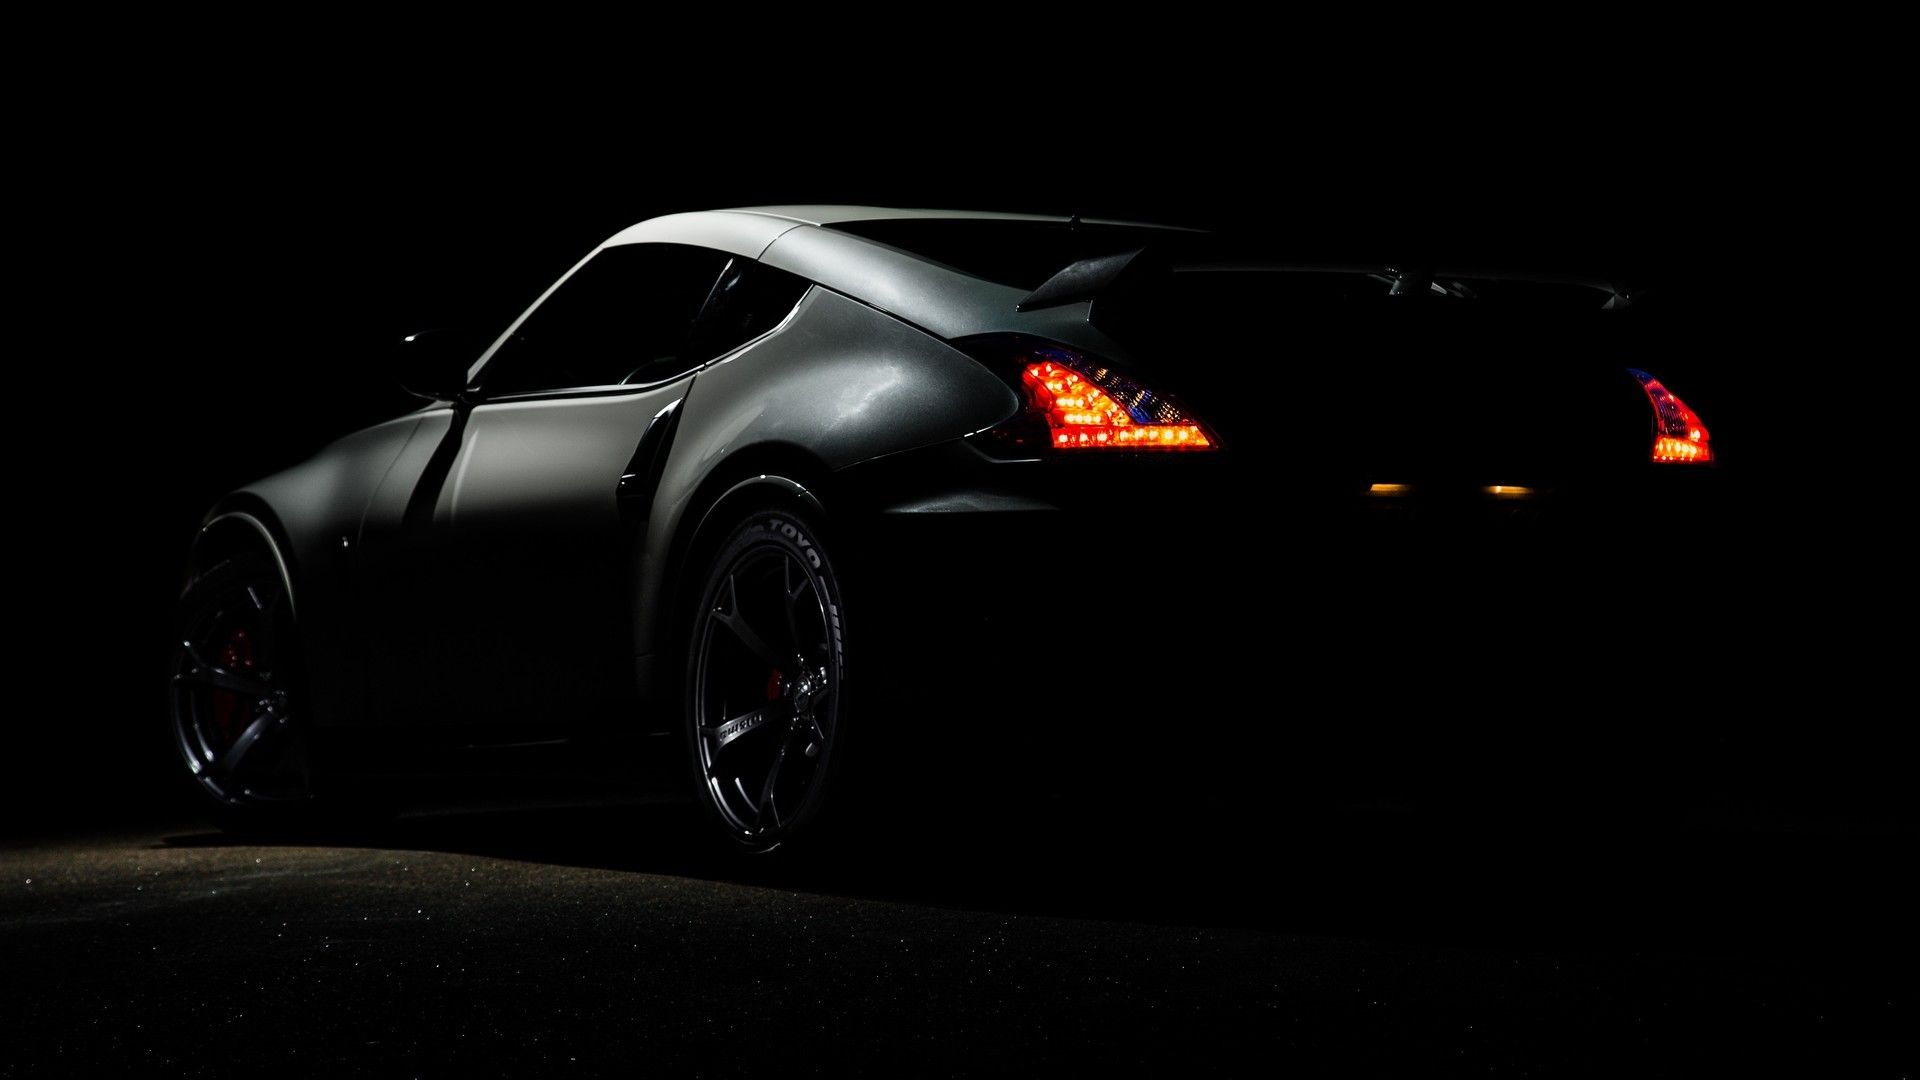 黑色系汽车超级炫酷又唯美主题高清桌面壁纸